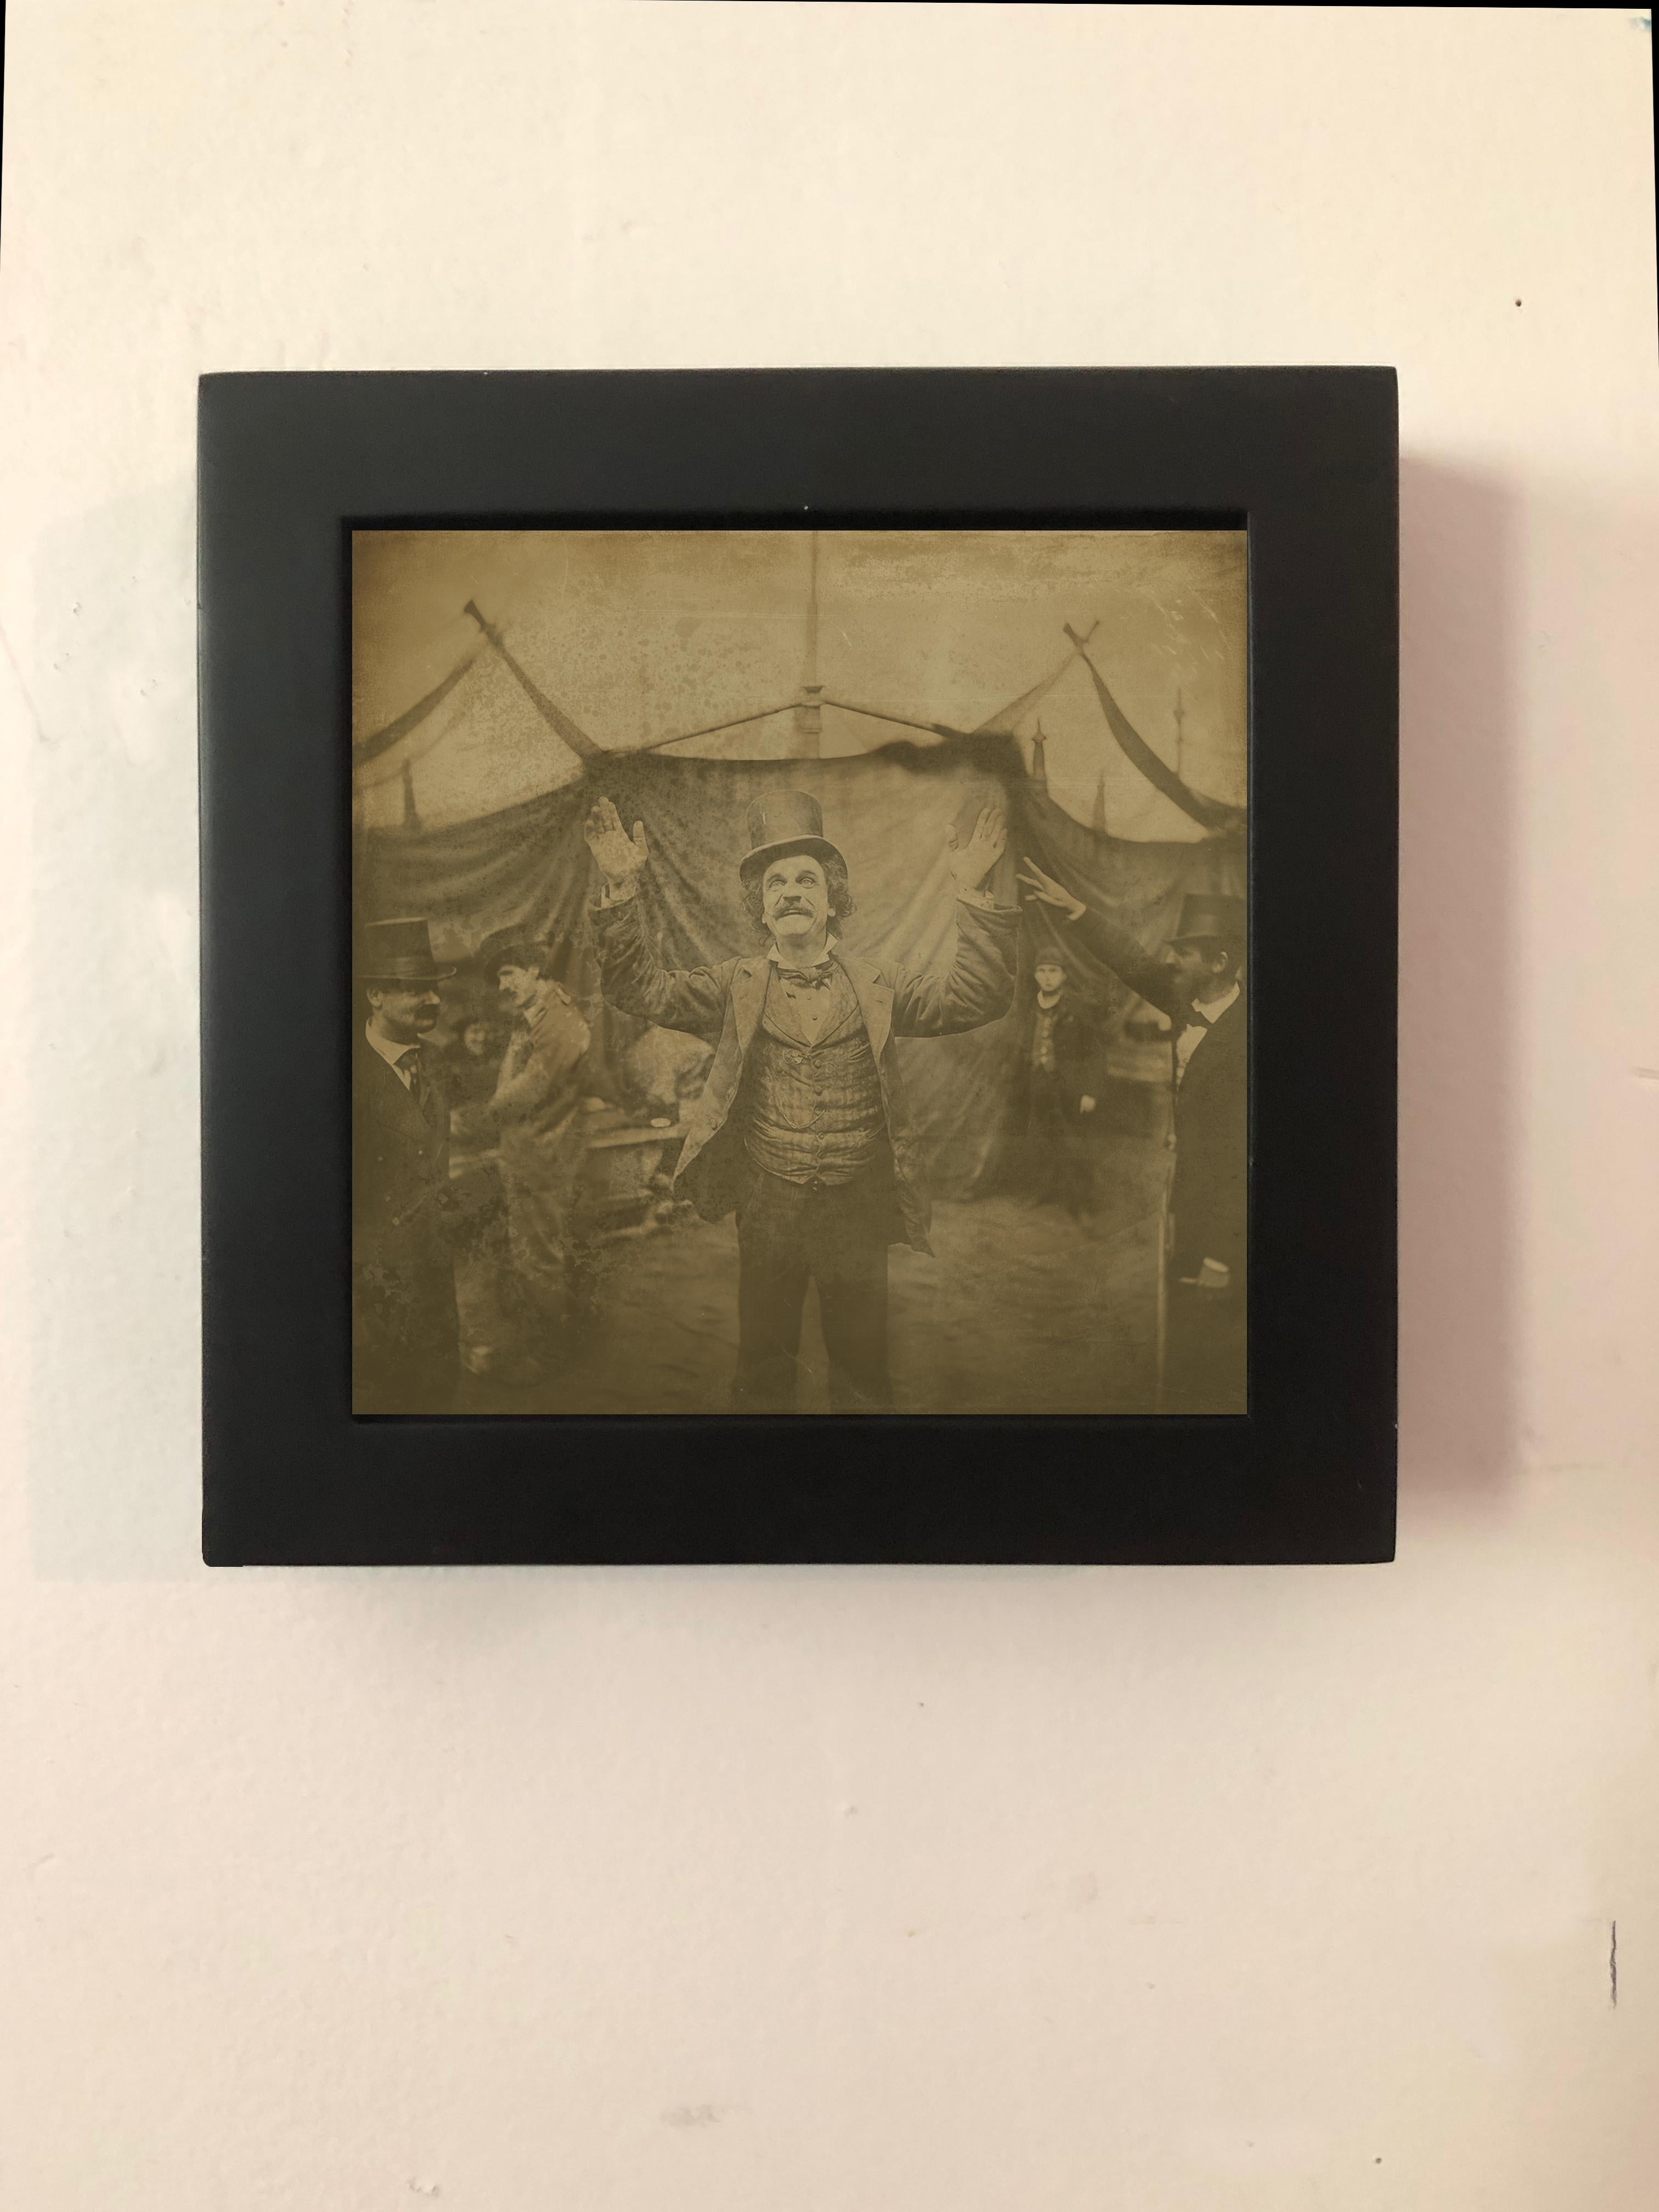 MAÎTRE DE CÉRÉMONIE   série cirque    reproduction du daguerrétype exotique  - Photograph de FPA Francis Pavy Artist